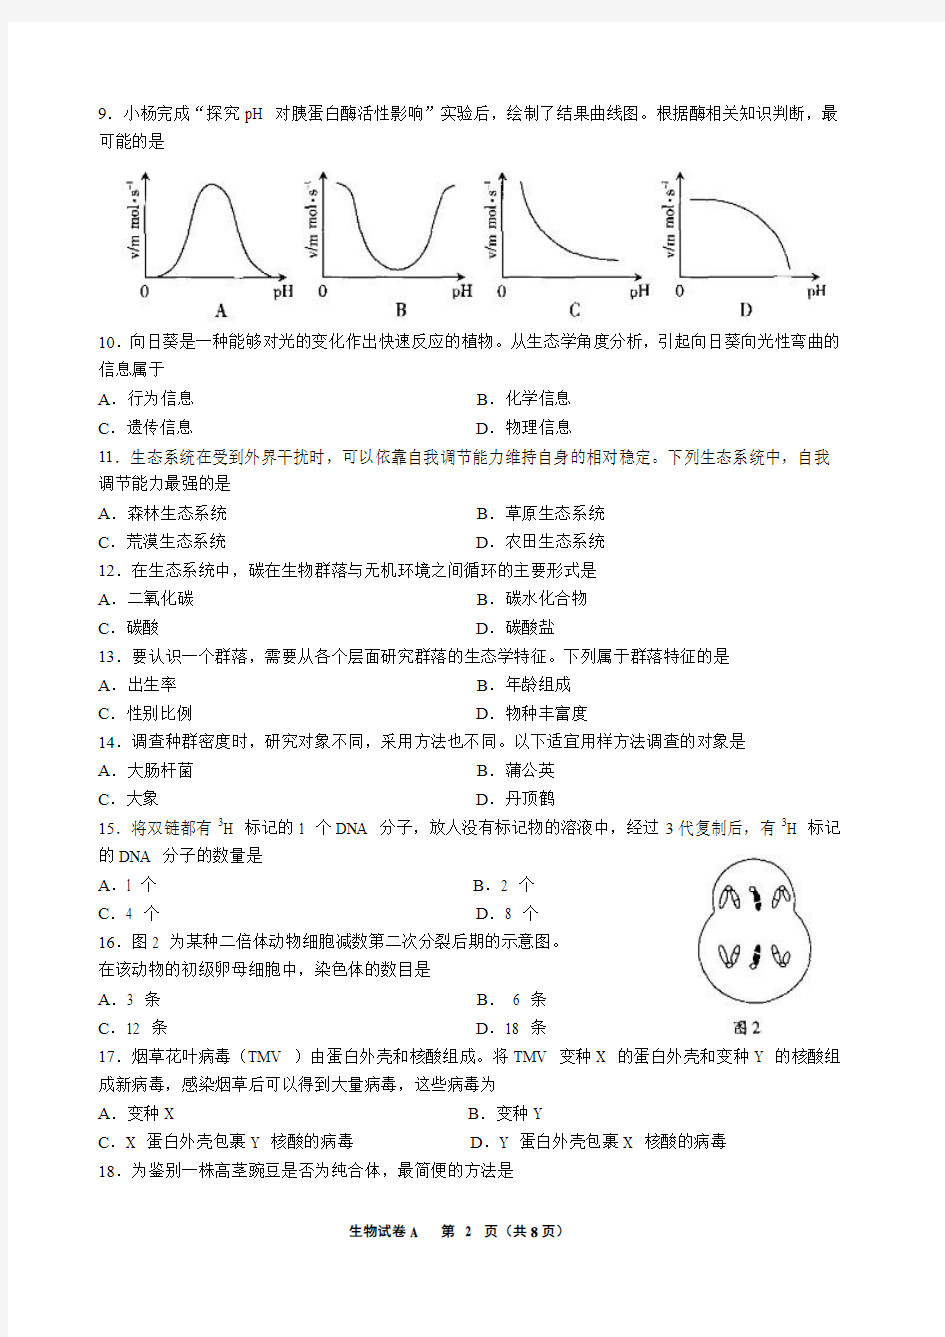 (生物)2012年6月广东省普通高中学业水平考试试卷 (含官方标准答案)